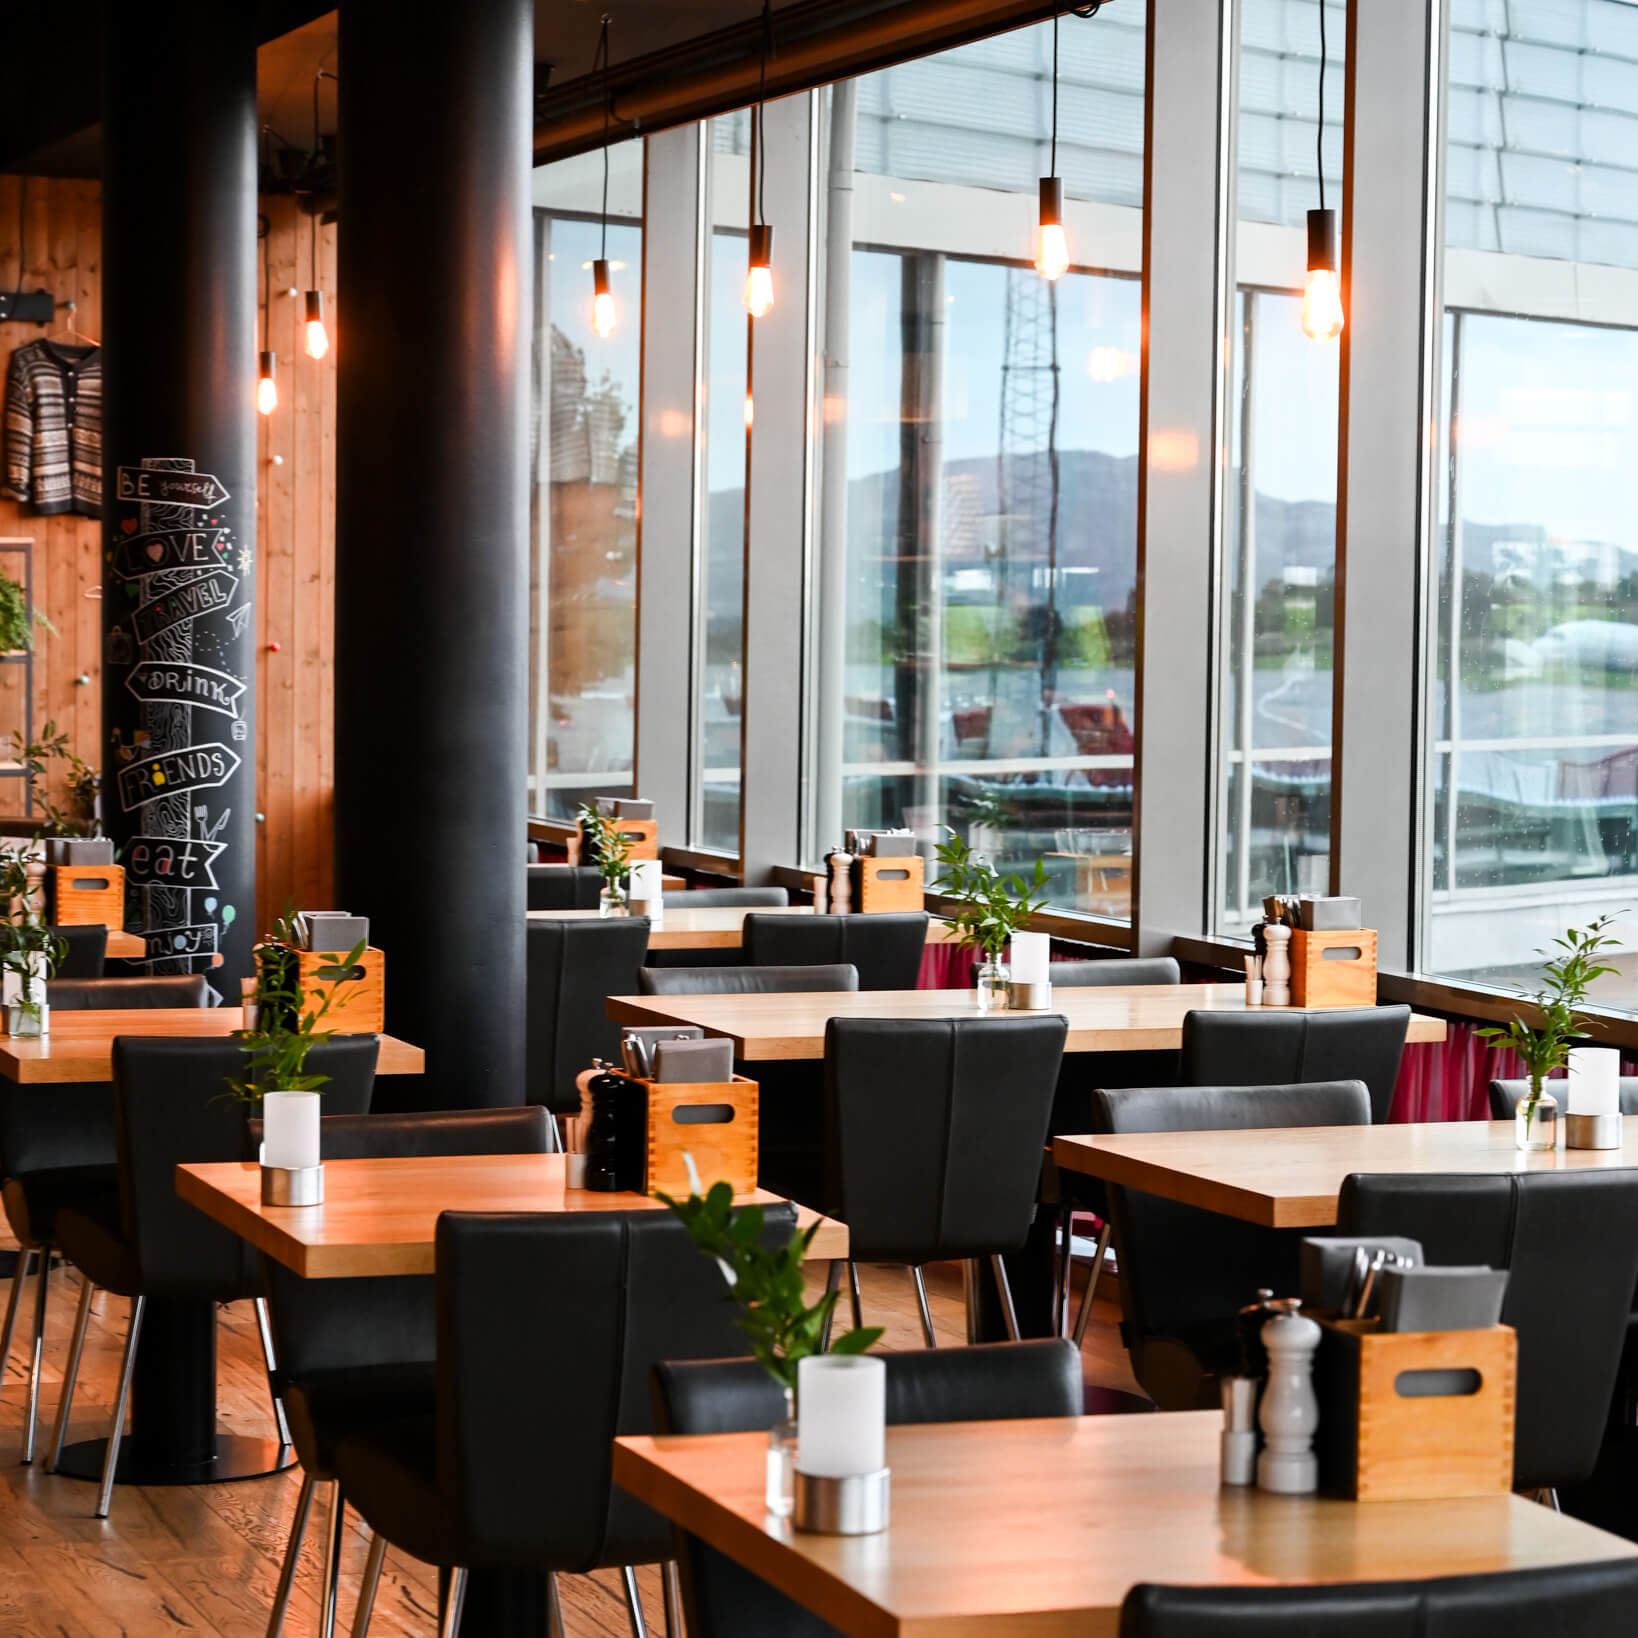 En moderne restaurantindretning med træborde, sorte stole, pendellamper og store vinduer, der giver naturligt lys.